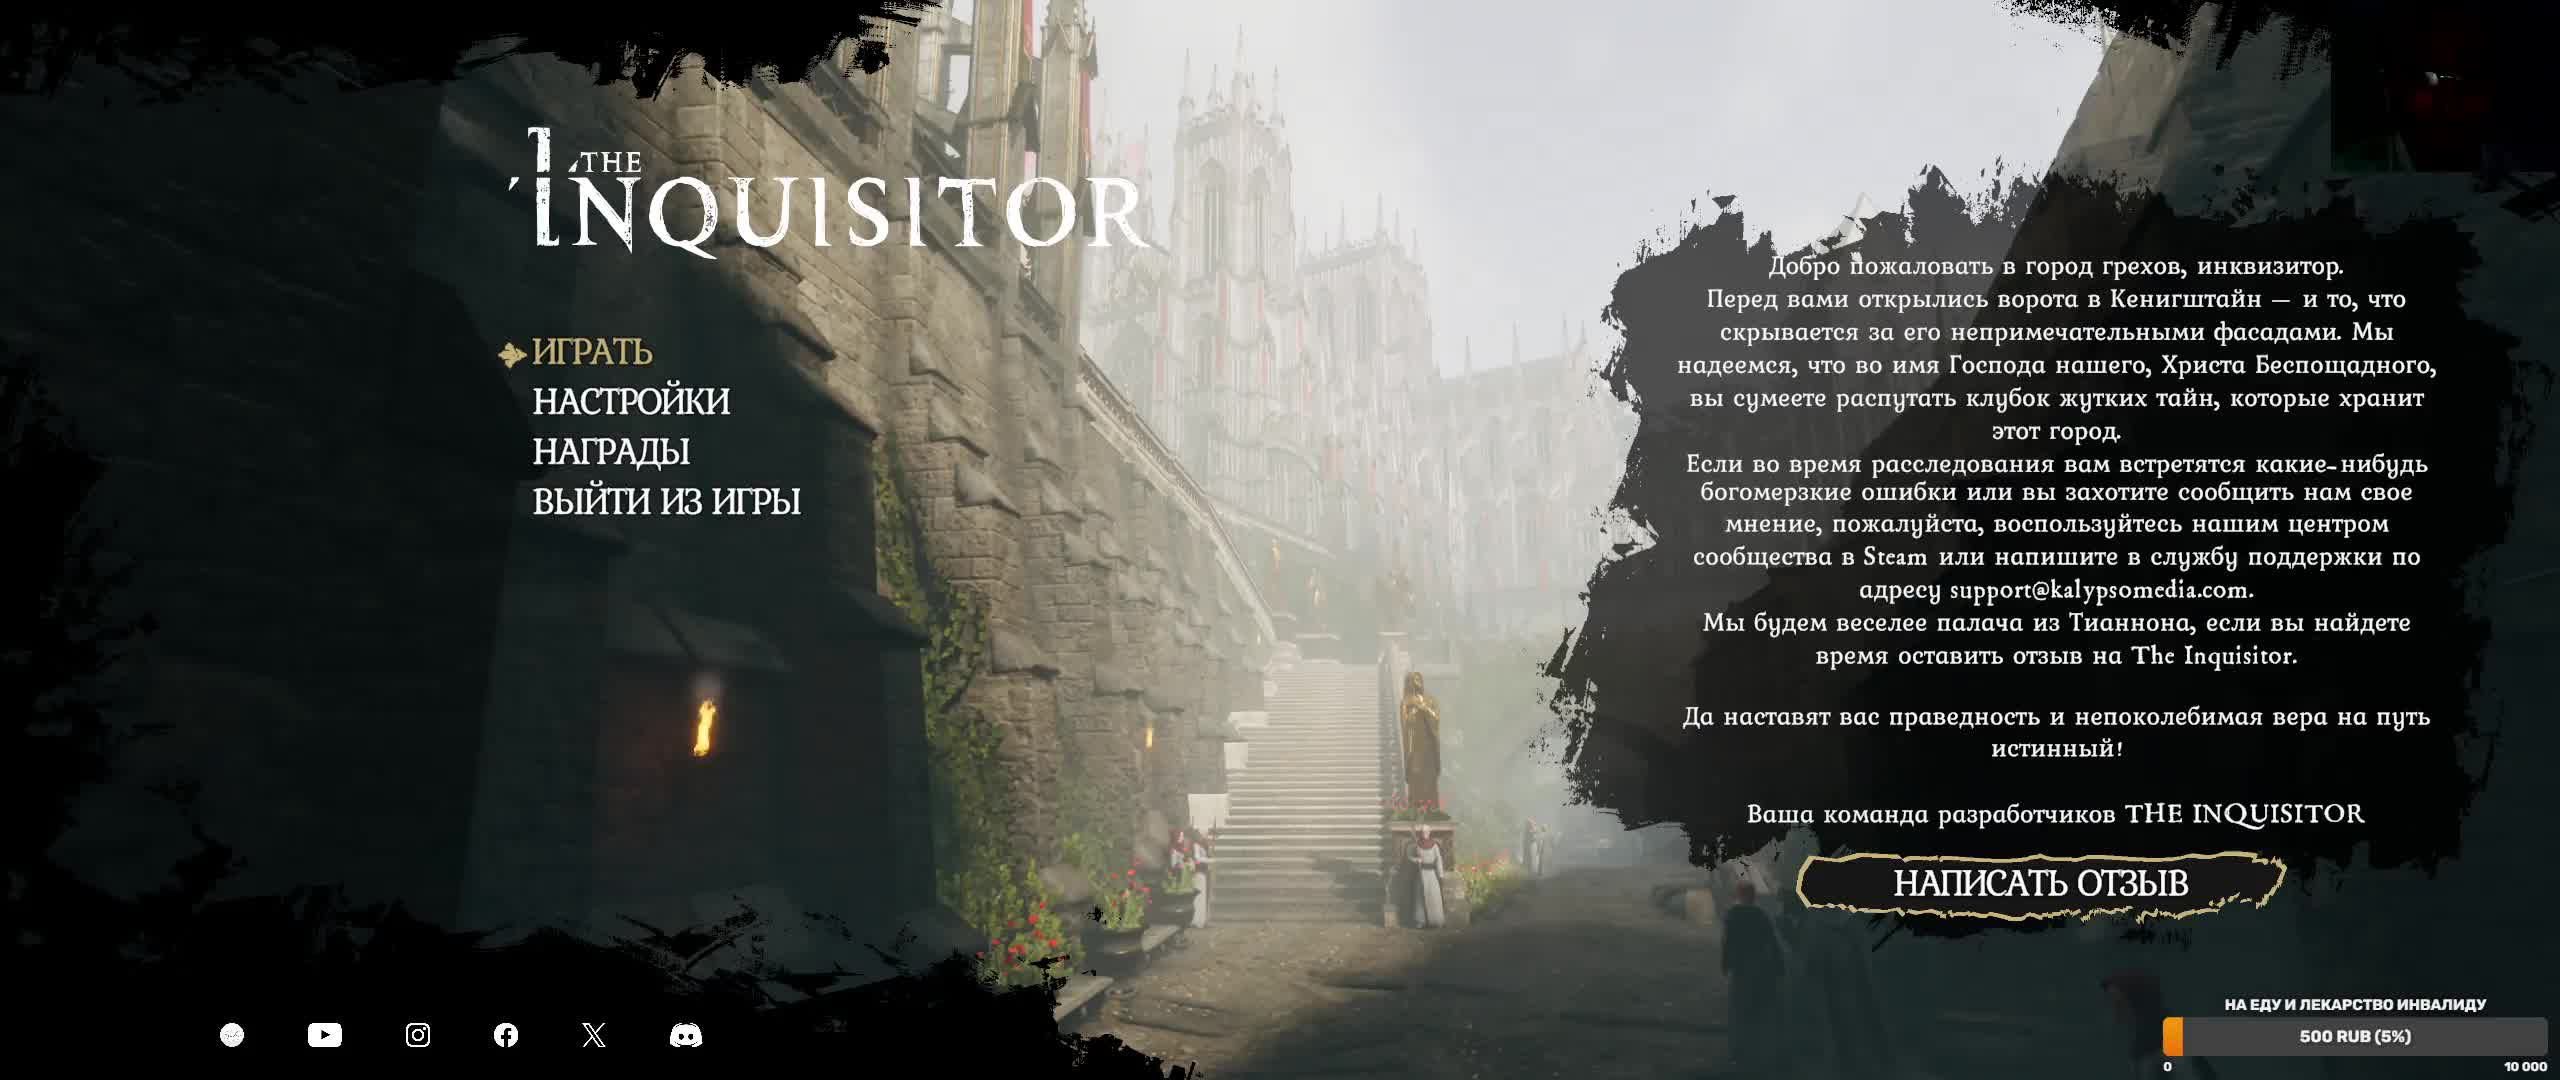 The Inquisitor #6 (Рус)